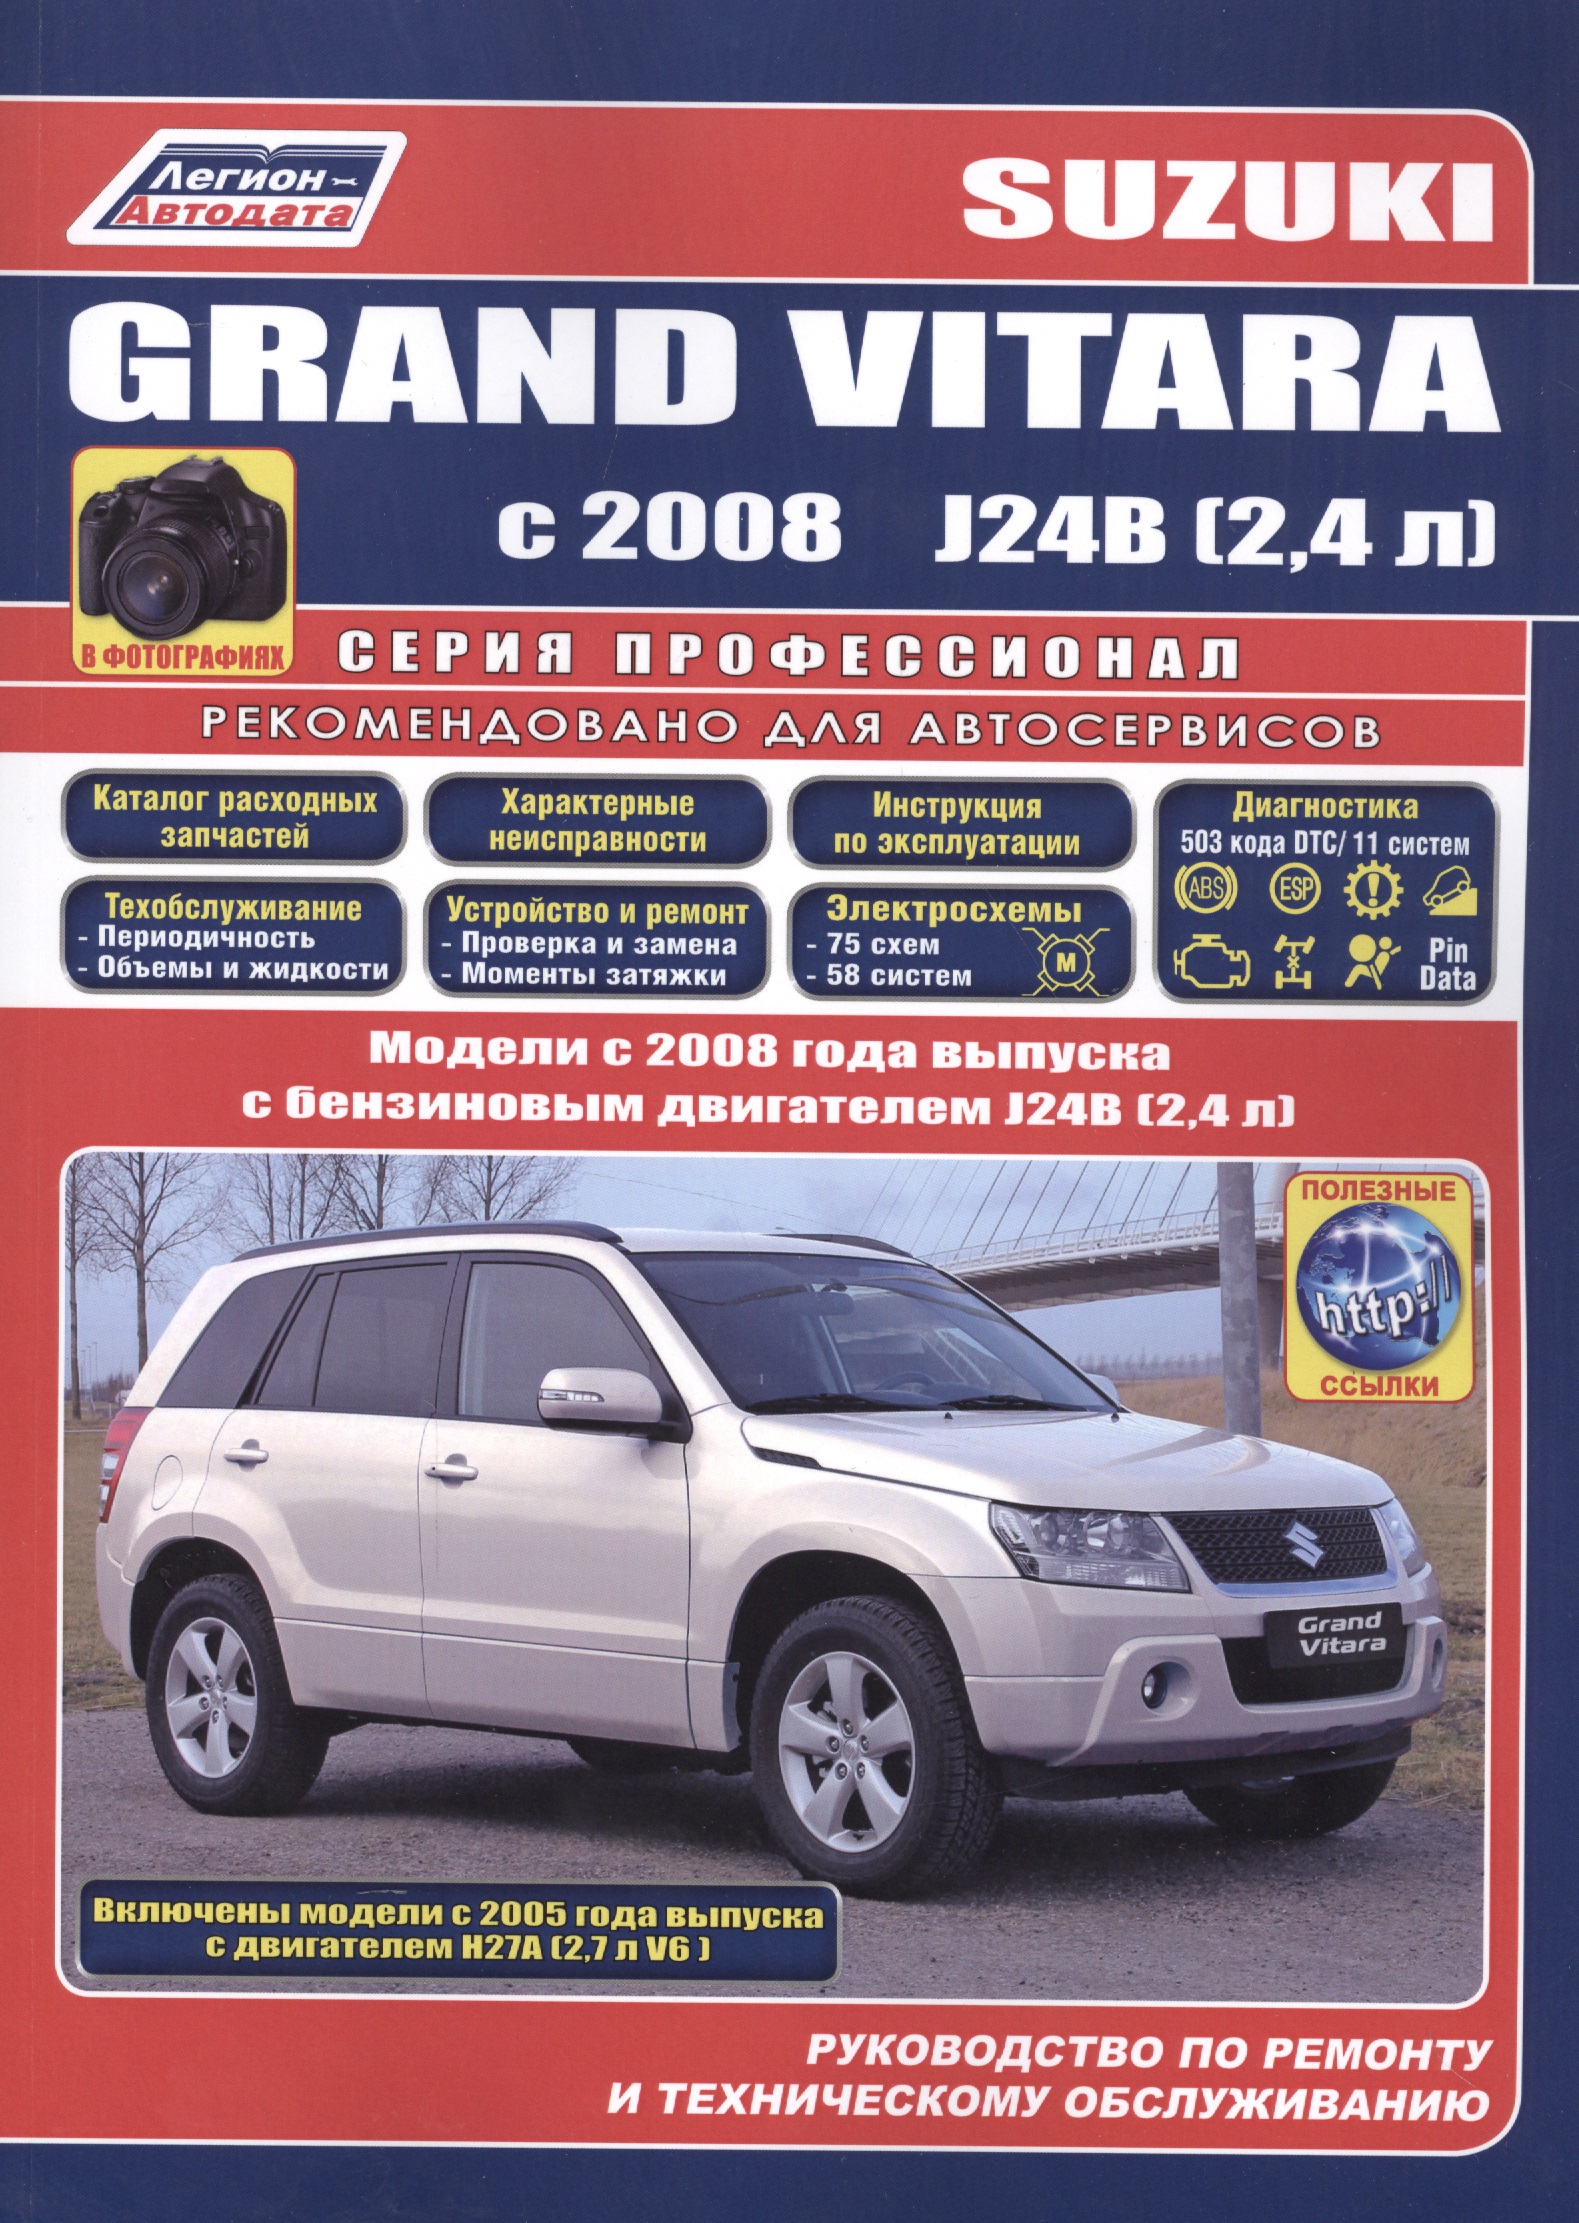 Suzuki Grand Vitara в фотогр. Мод. С 2008 г. вып. с бенз. двигателями J24B… (мПрофессионал) цена и фото